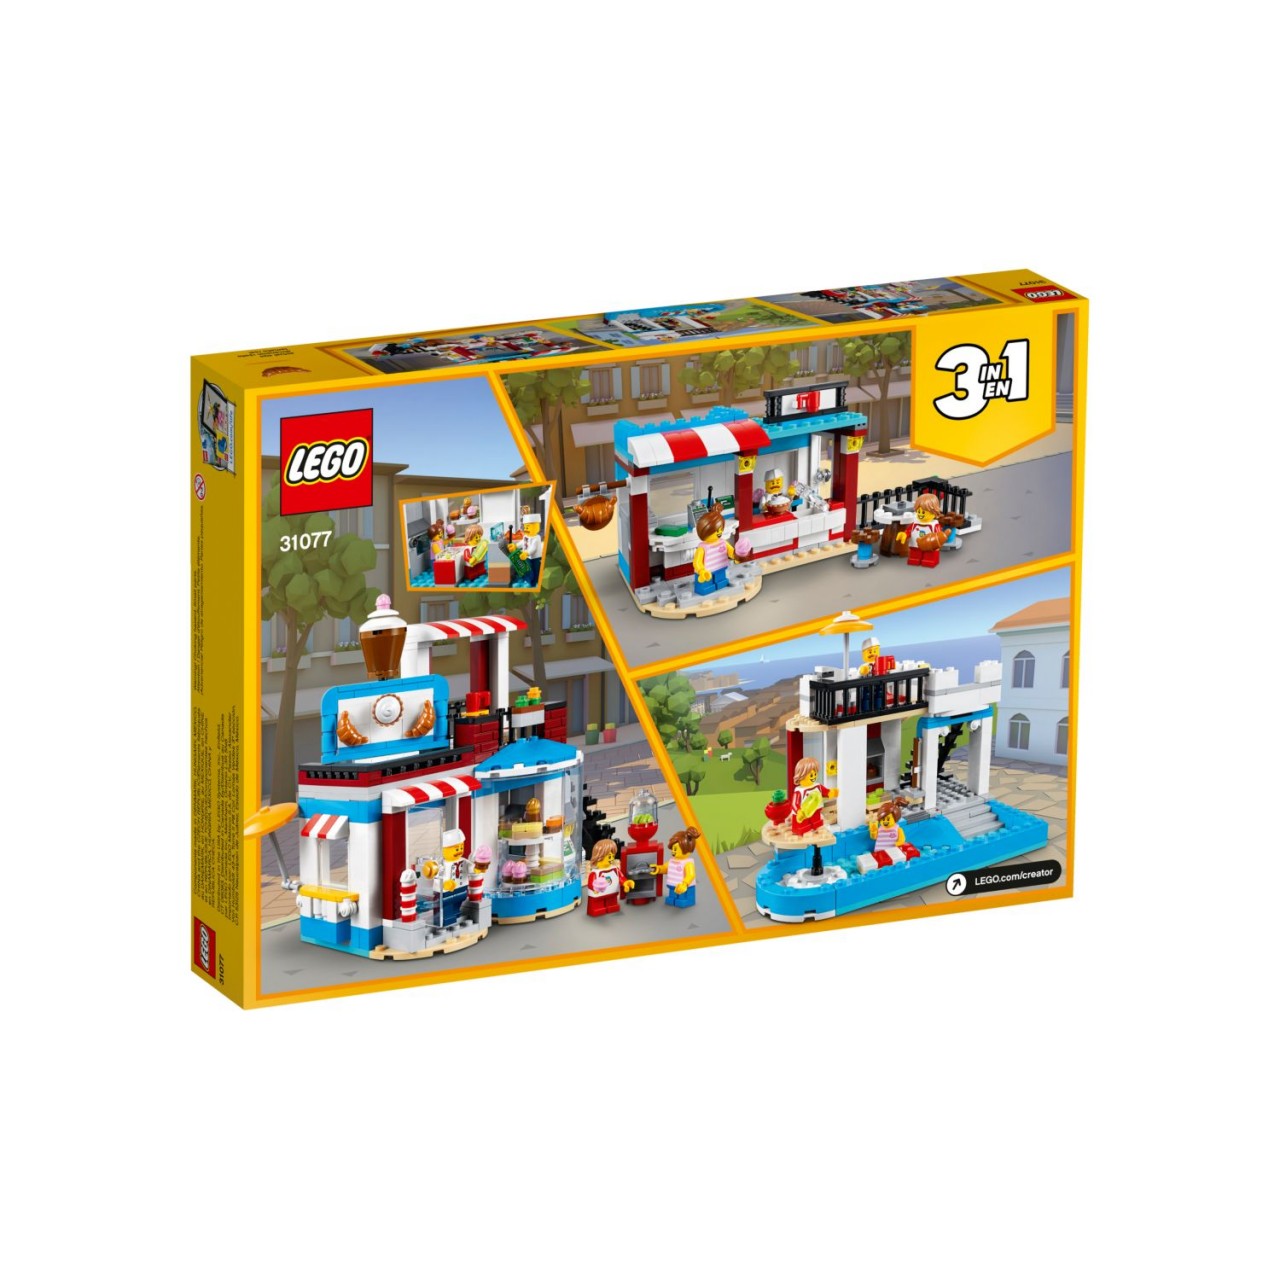 LEGO CREATOR 31077 Modulares Zuckerhaus